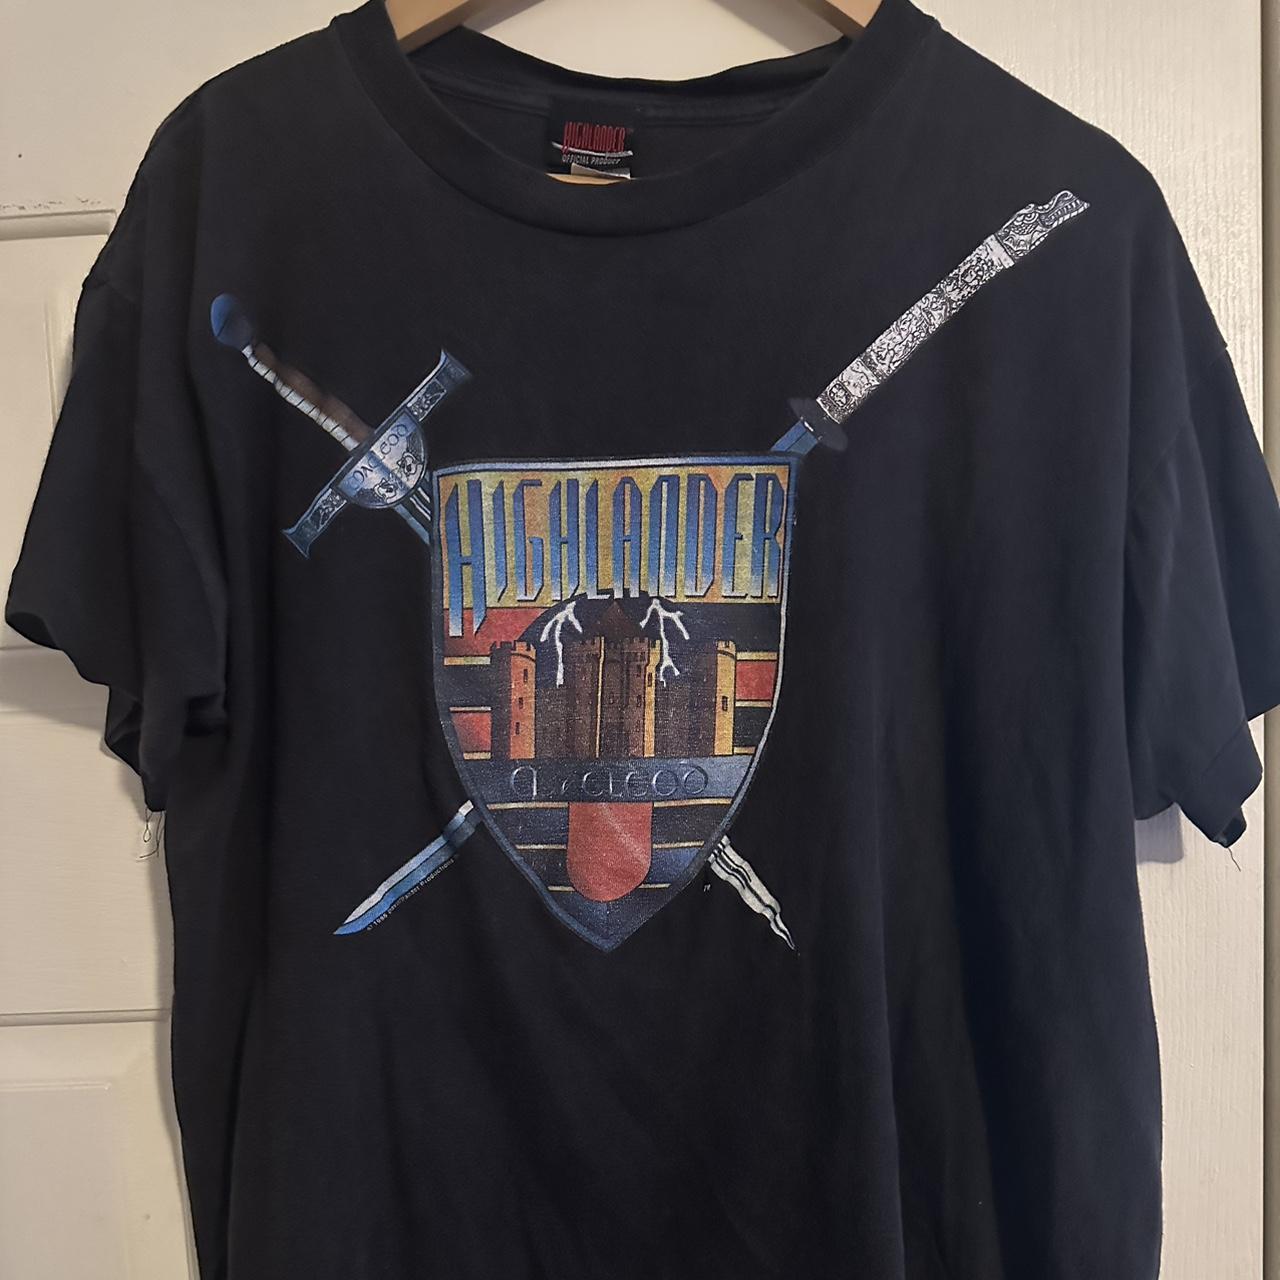 Vintage Men's T-Shirt - Multi - XL